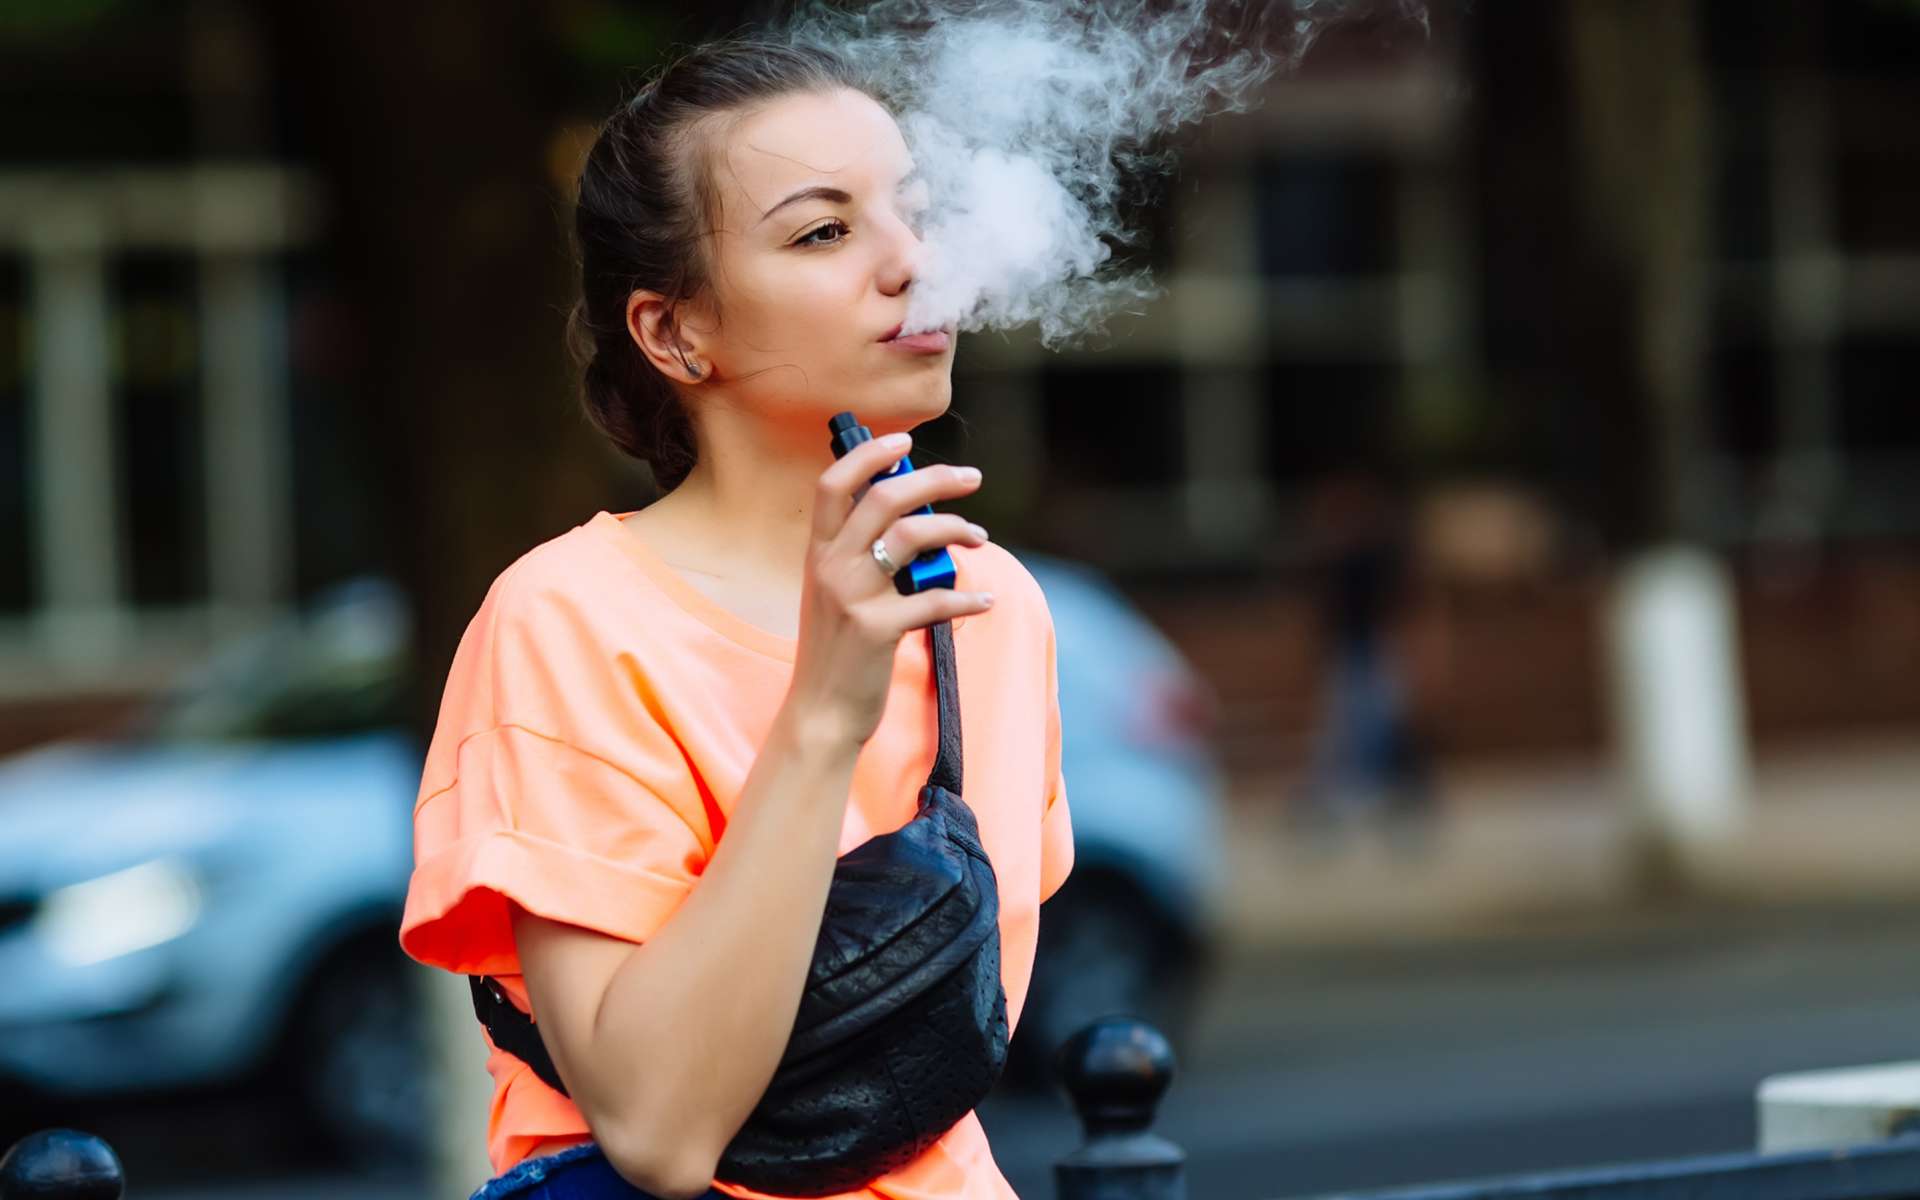 Les États-Unis vont interdire les e-cigarettes aromatisées. © licsiren, IStock.com